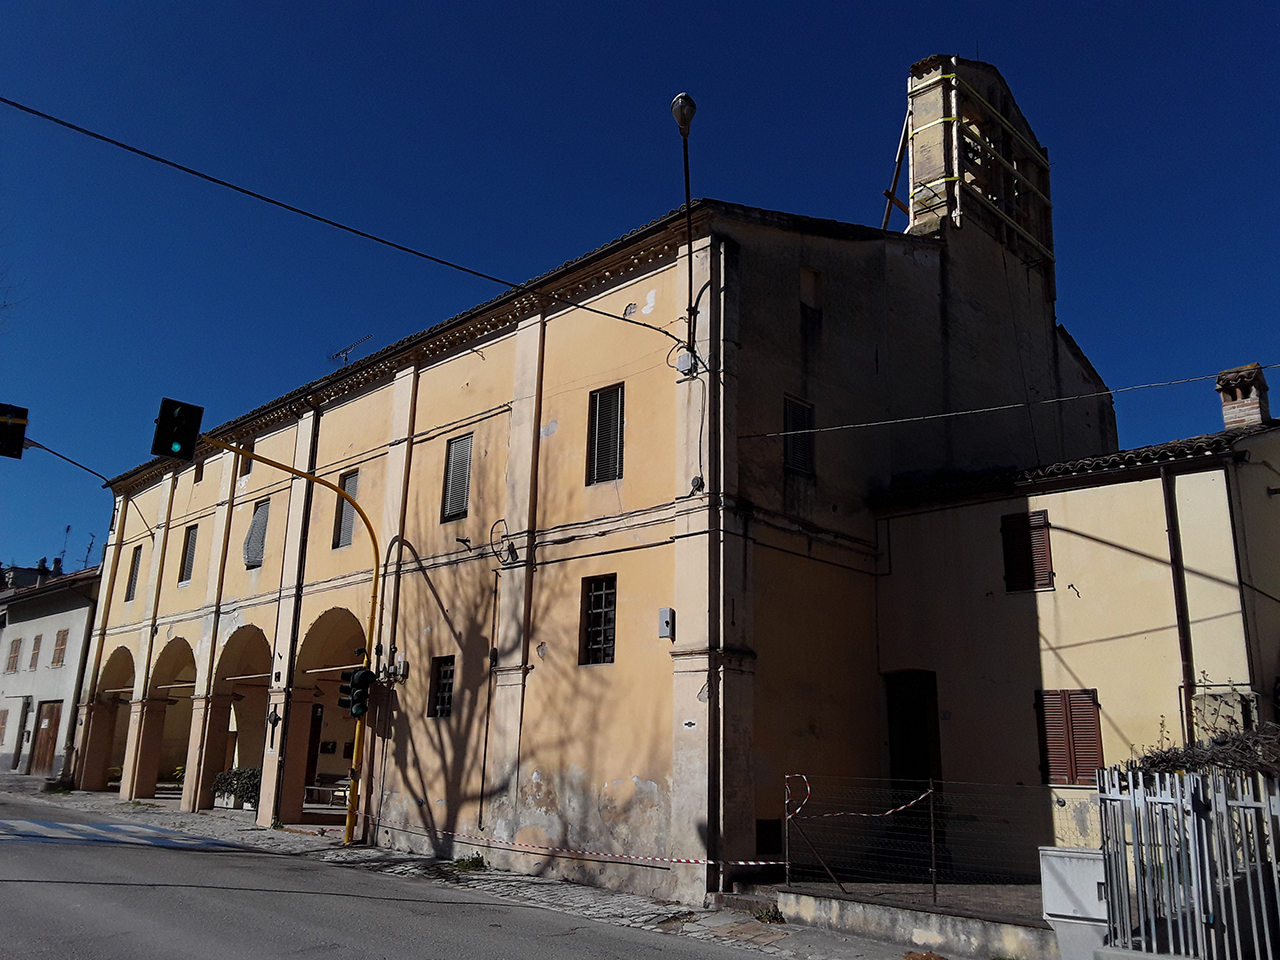 Casa canonica S. Maria Grazie (canonica) - Tolentino (MC)  (XV)